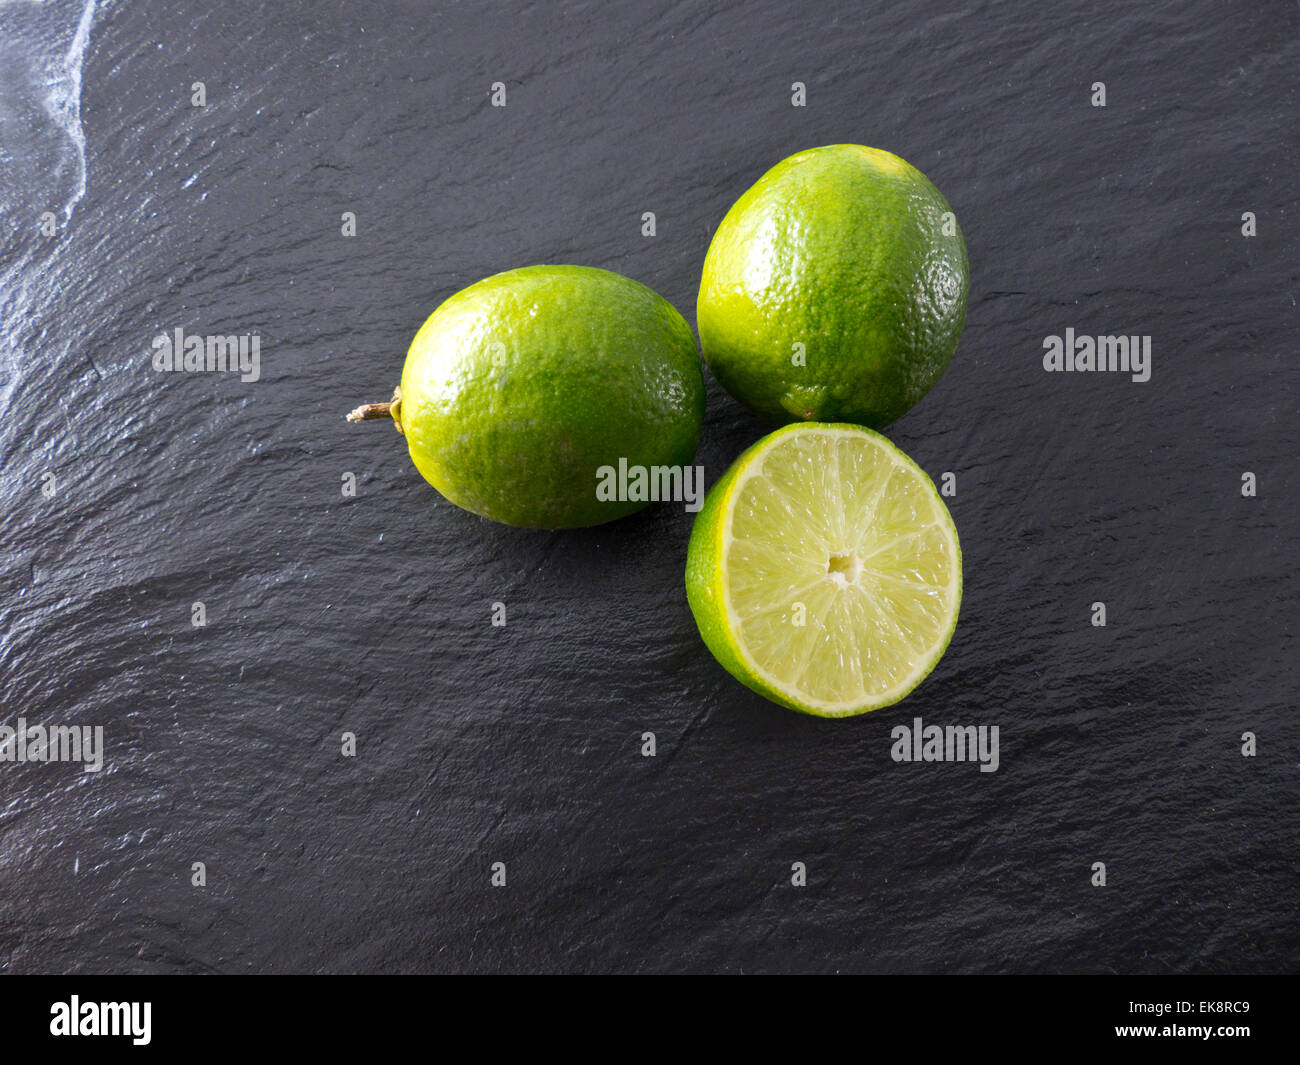 Limes on a slate Stock Photo